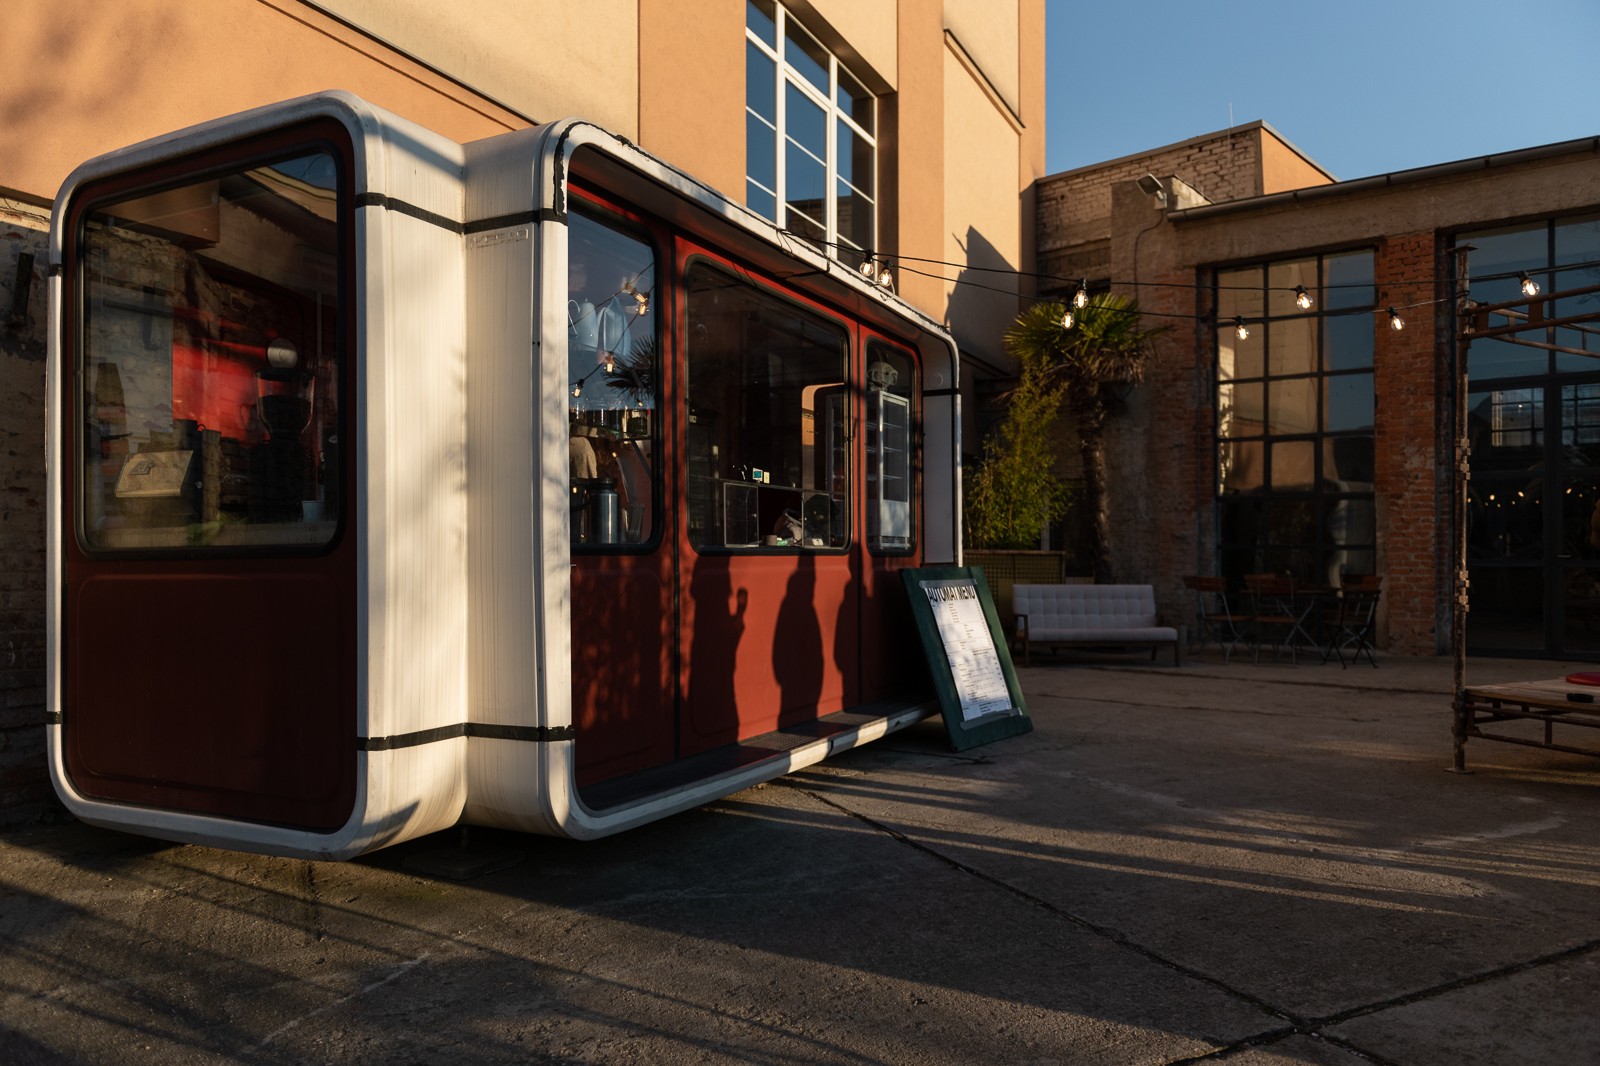 Svěží káva: Jugoslávský Kiosk K67 přistál na svitavském nábřeží. Ukrytá kavárna Automat překvapí hravou industriální estetikou 